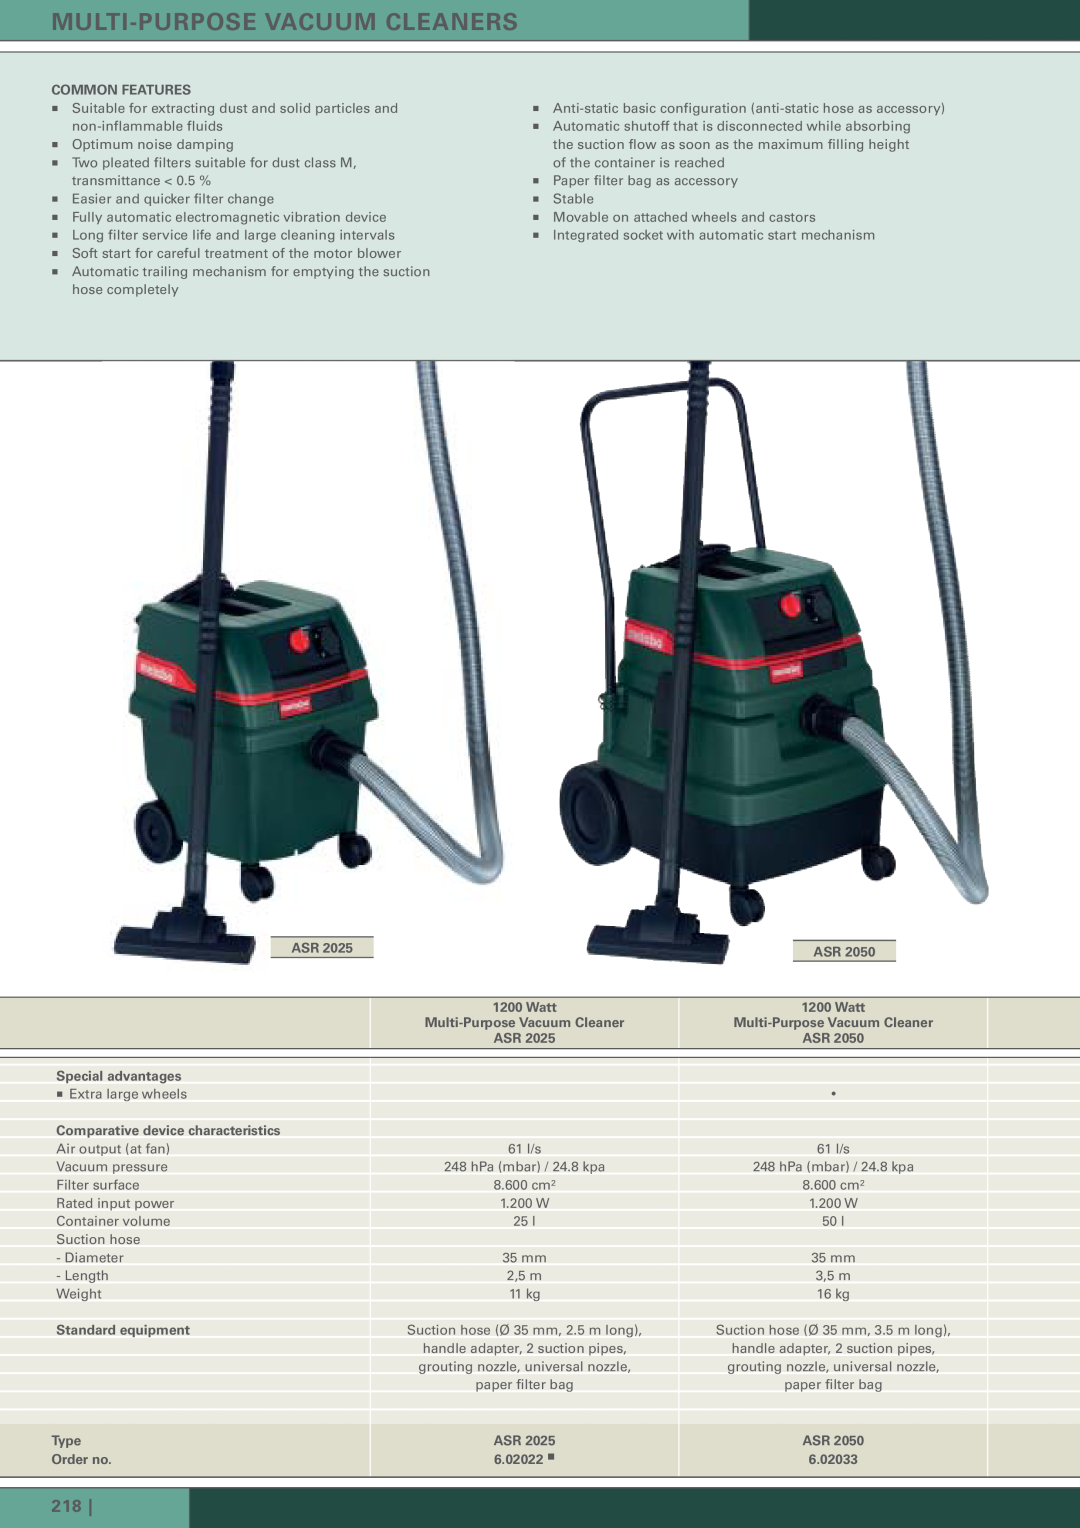 Metabo AS 1200, ASA 1202 manual 218, Multi-Purposevacuum Cleaners 